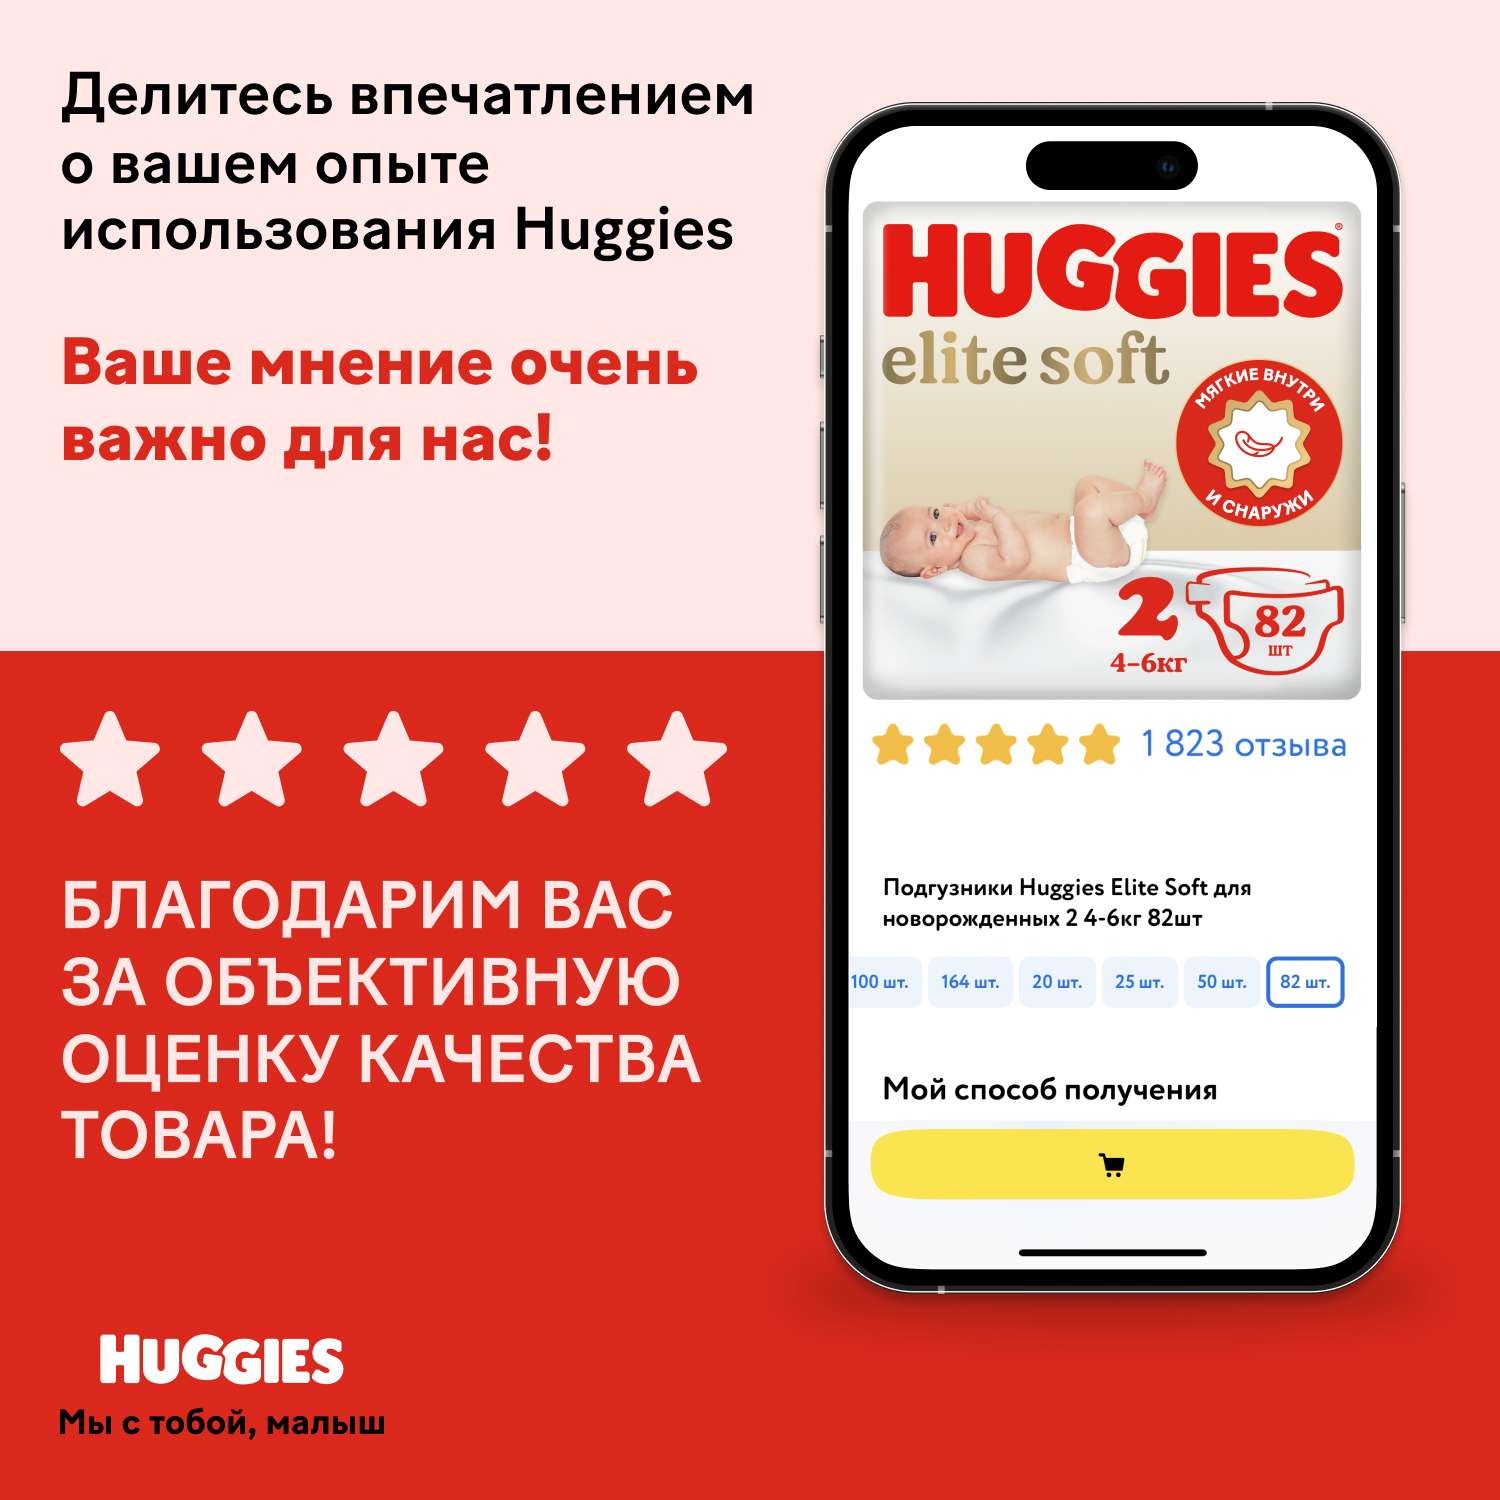 Подгузники Huggies Elite Soft для новорожденных 2 4-6кг 100шт - фото 20